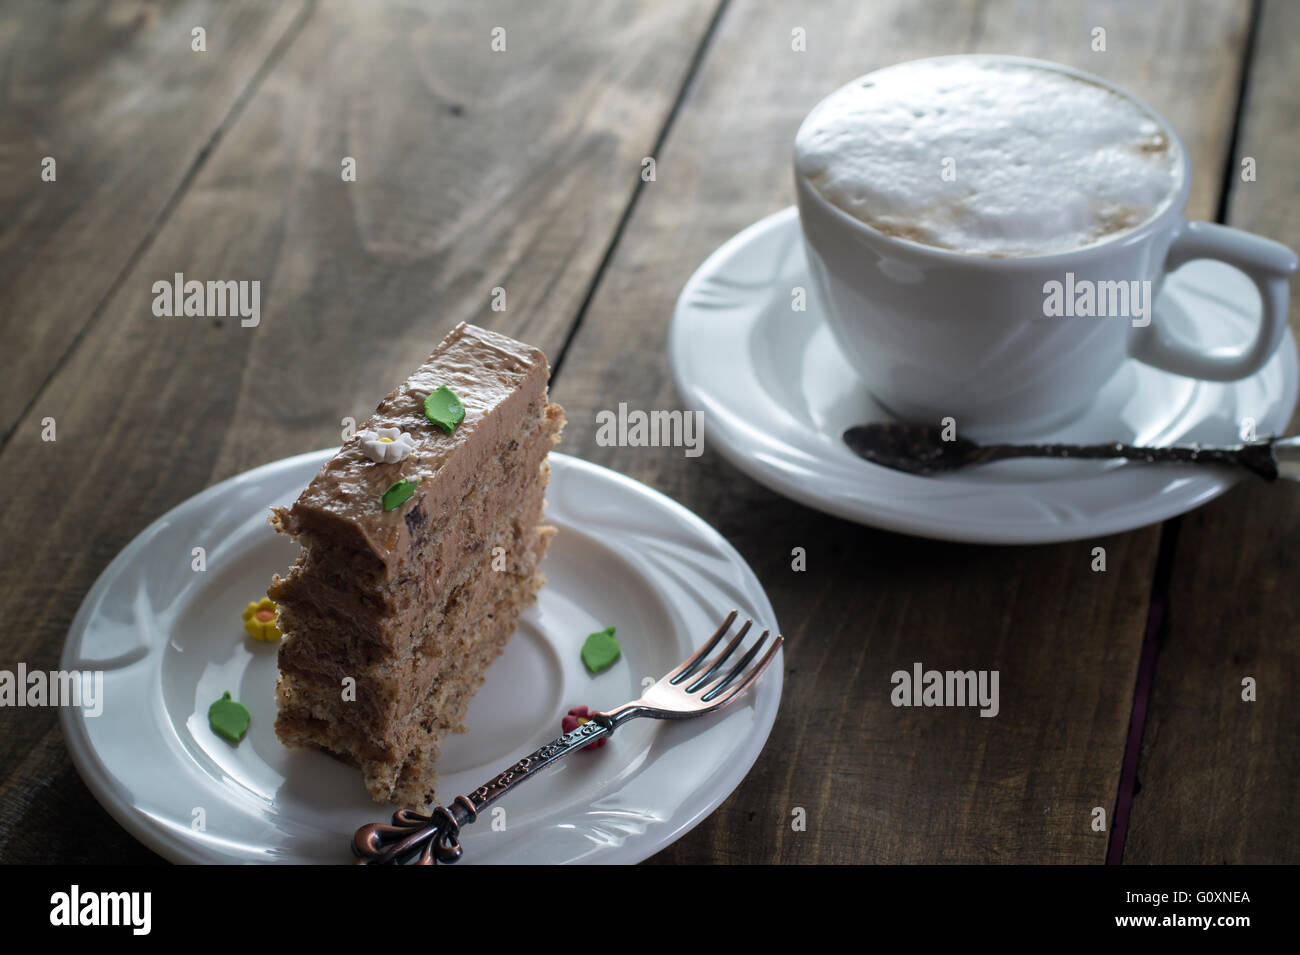 Gâteau au chocolat sur la plaque blanche avec une tasse de café Banque D'Images